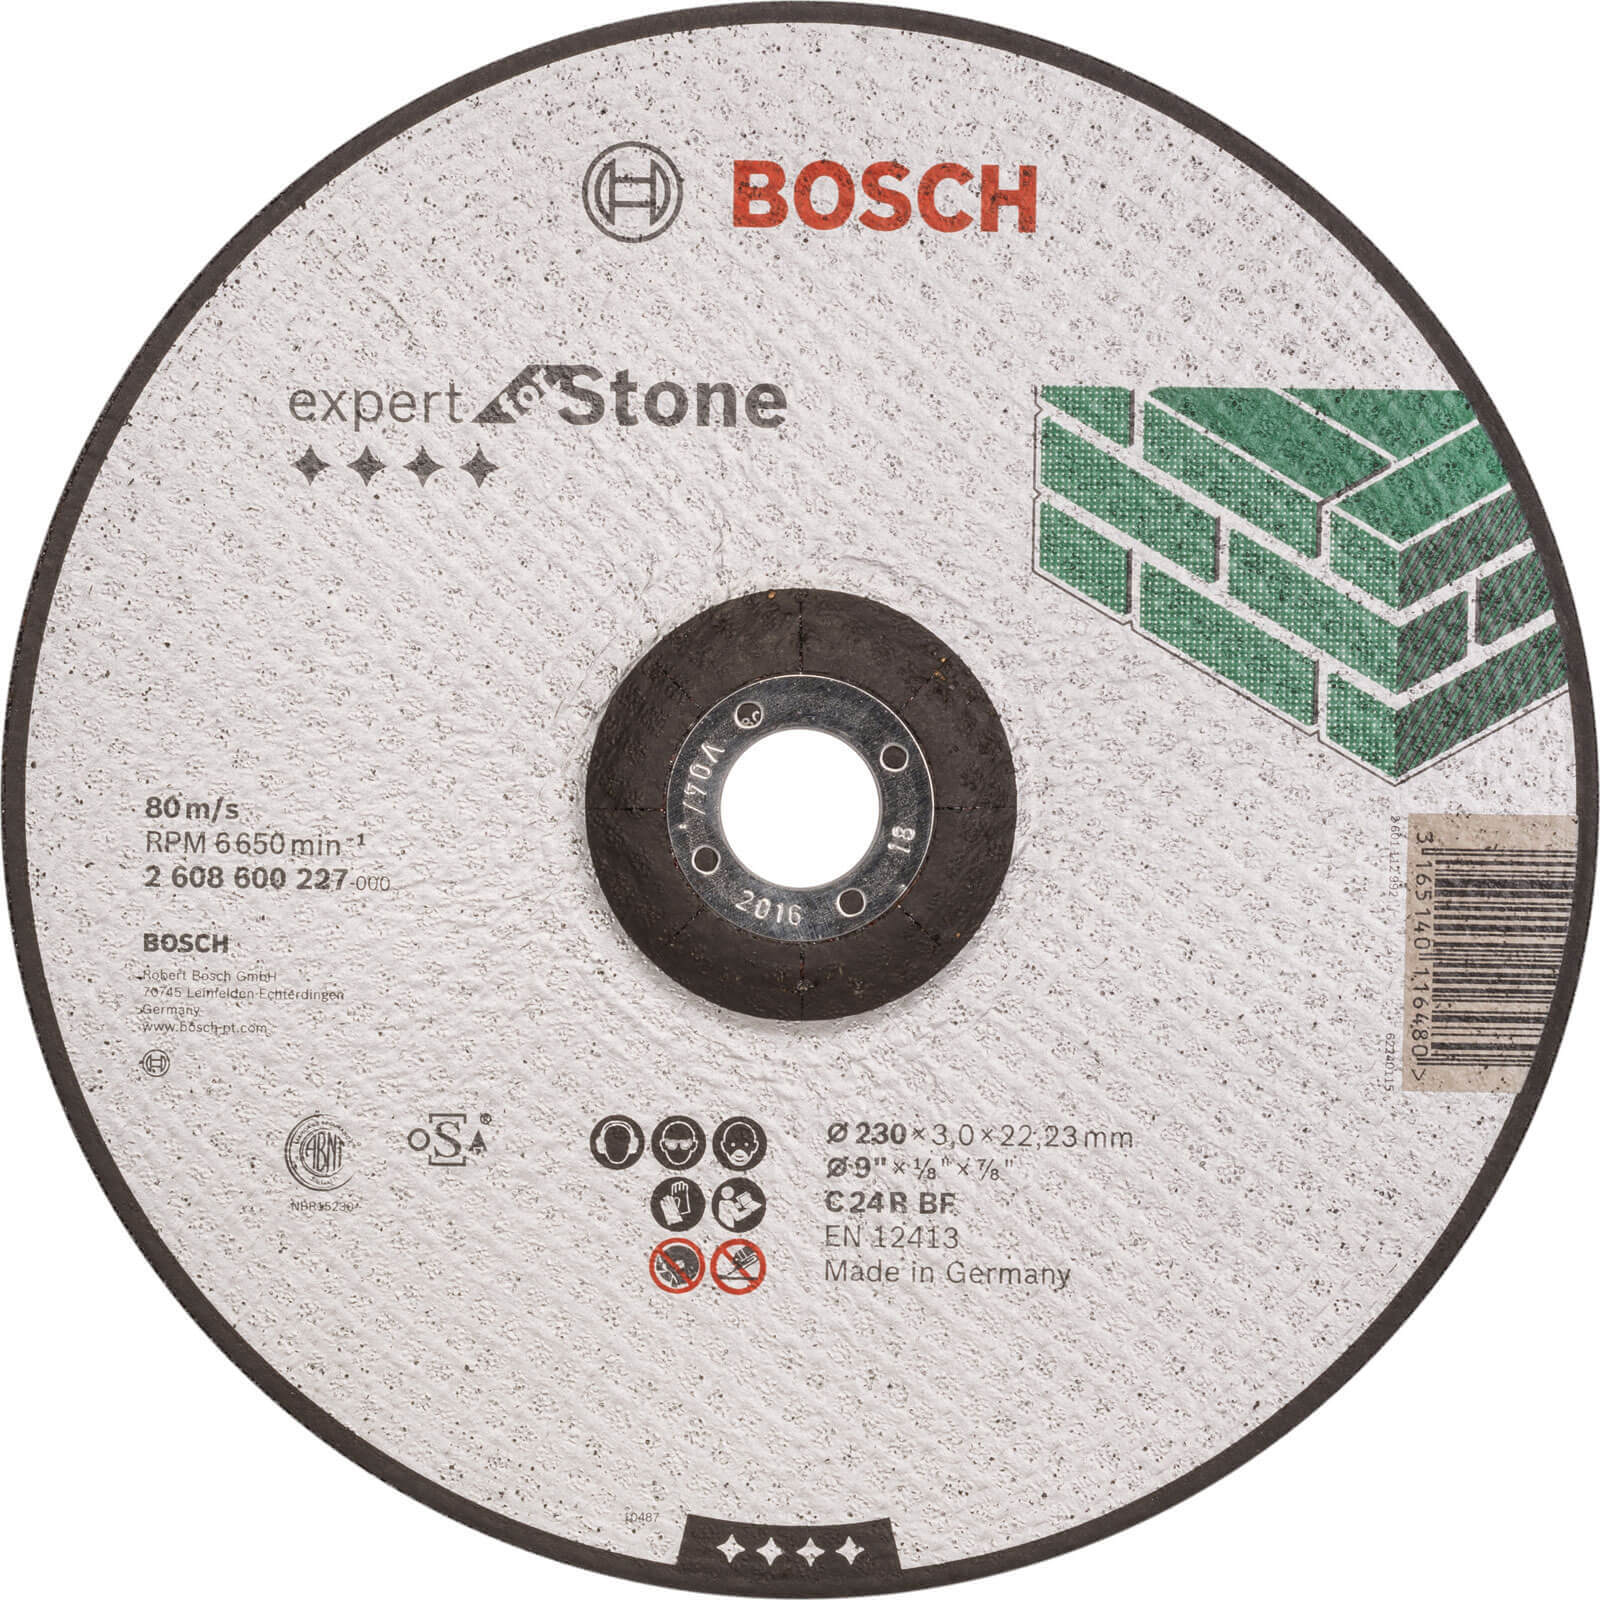 Photos - Cutting Disc Bosch C24R BF Depressed Stone  230mm 2608600227 